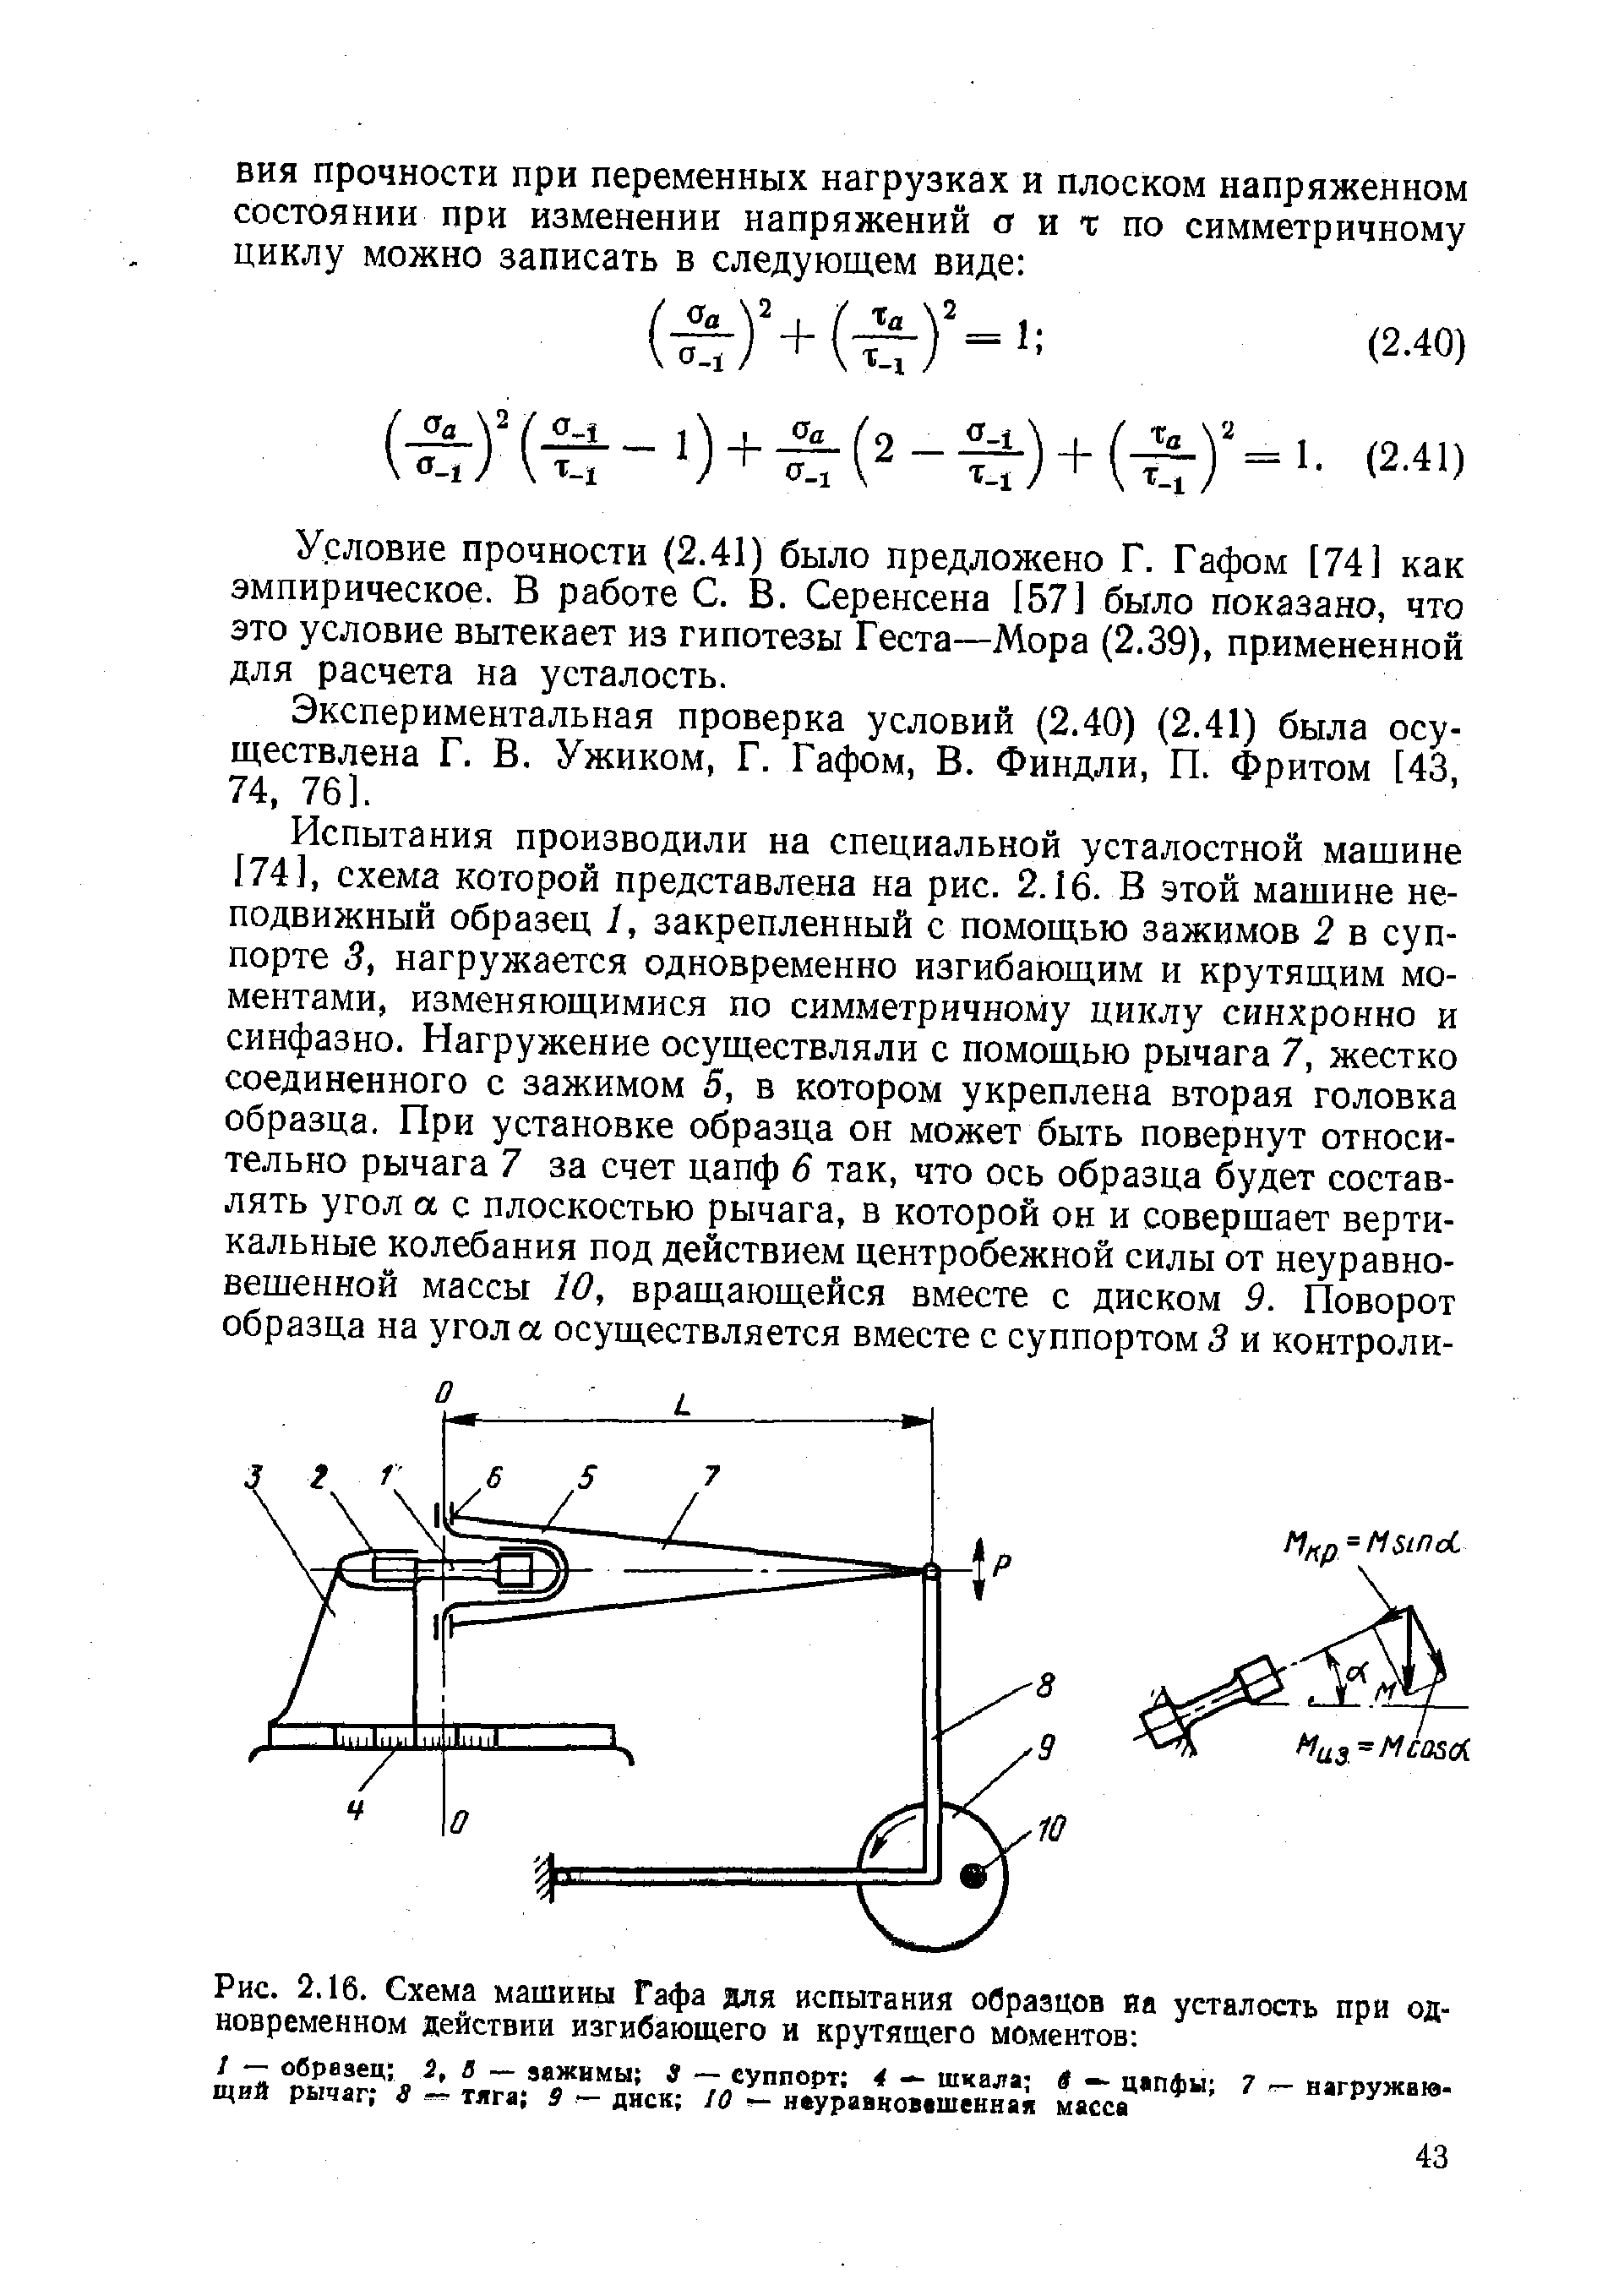 Условие прочности (2.41) было предложено Г. Гафом [74] как эмпирическое. В работе С. В. Серенсена 157] было показано, что это условие вытекает из гипотезы Геста—Мора (2.39), примененной для расчета на усталость.
